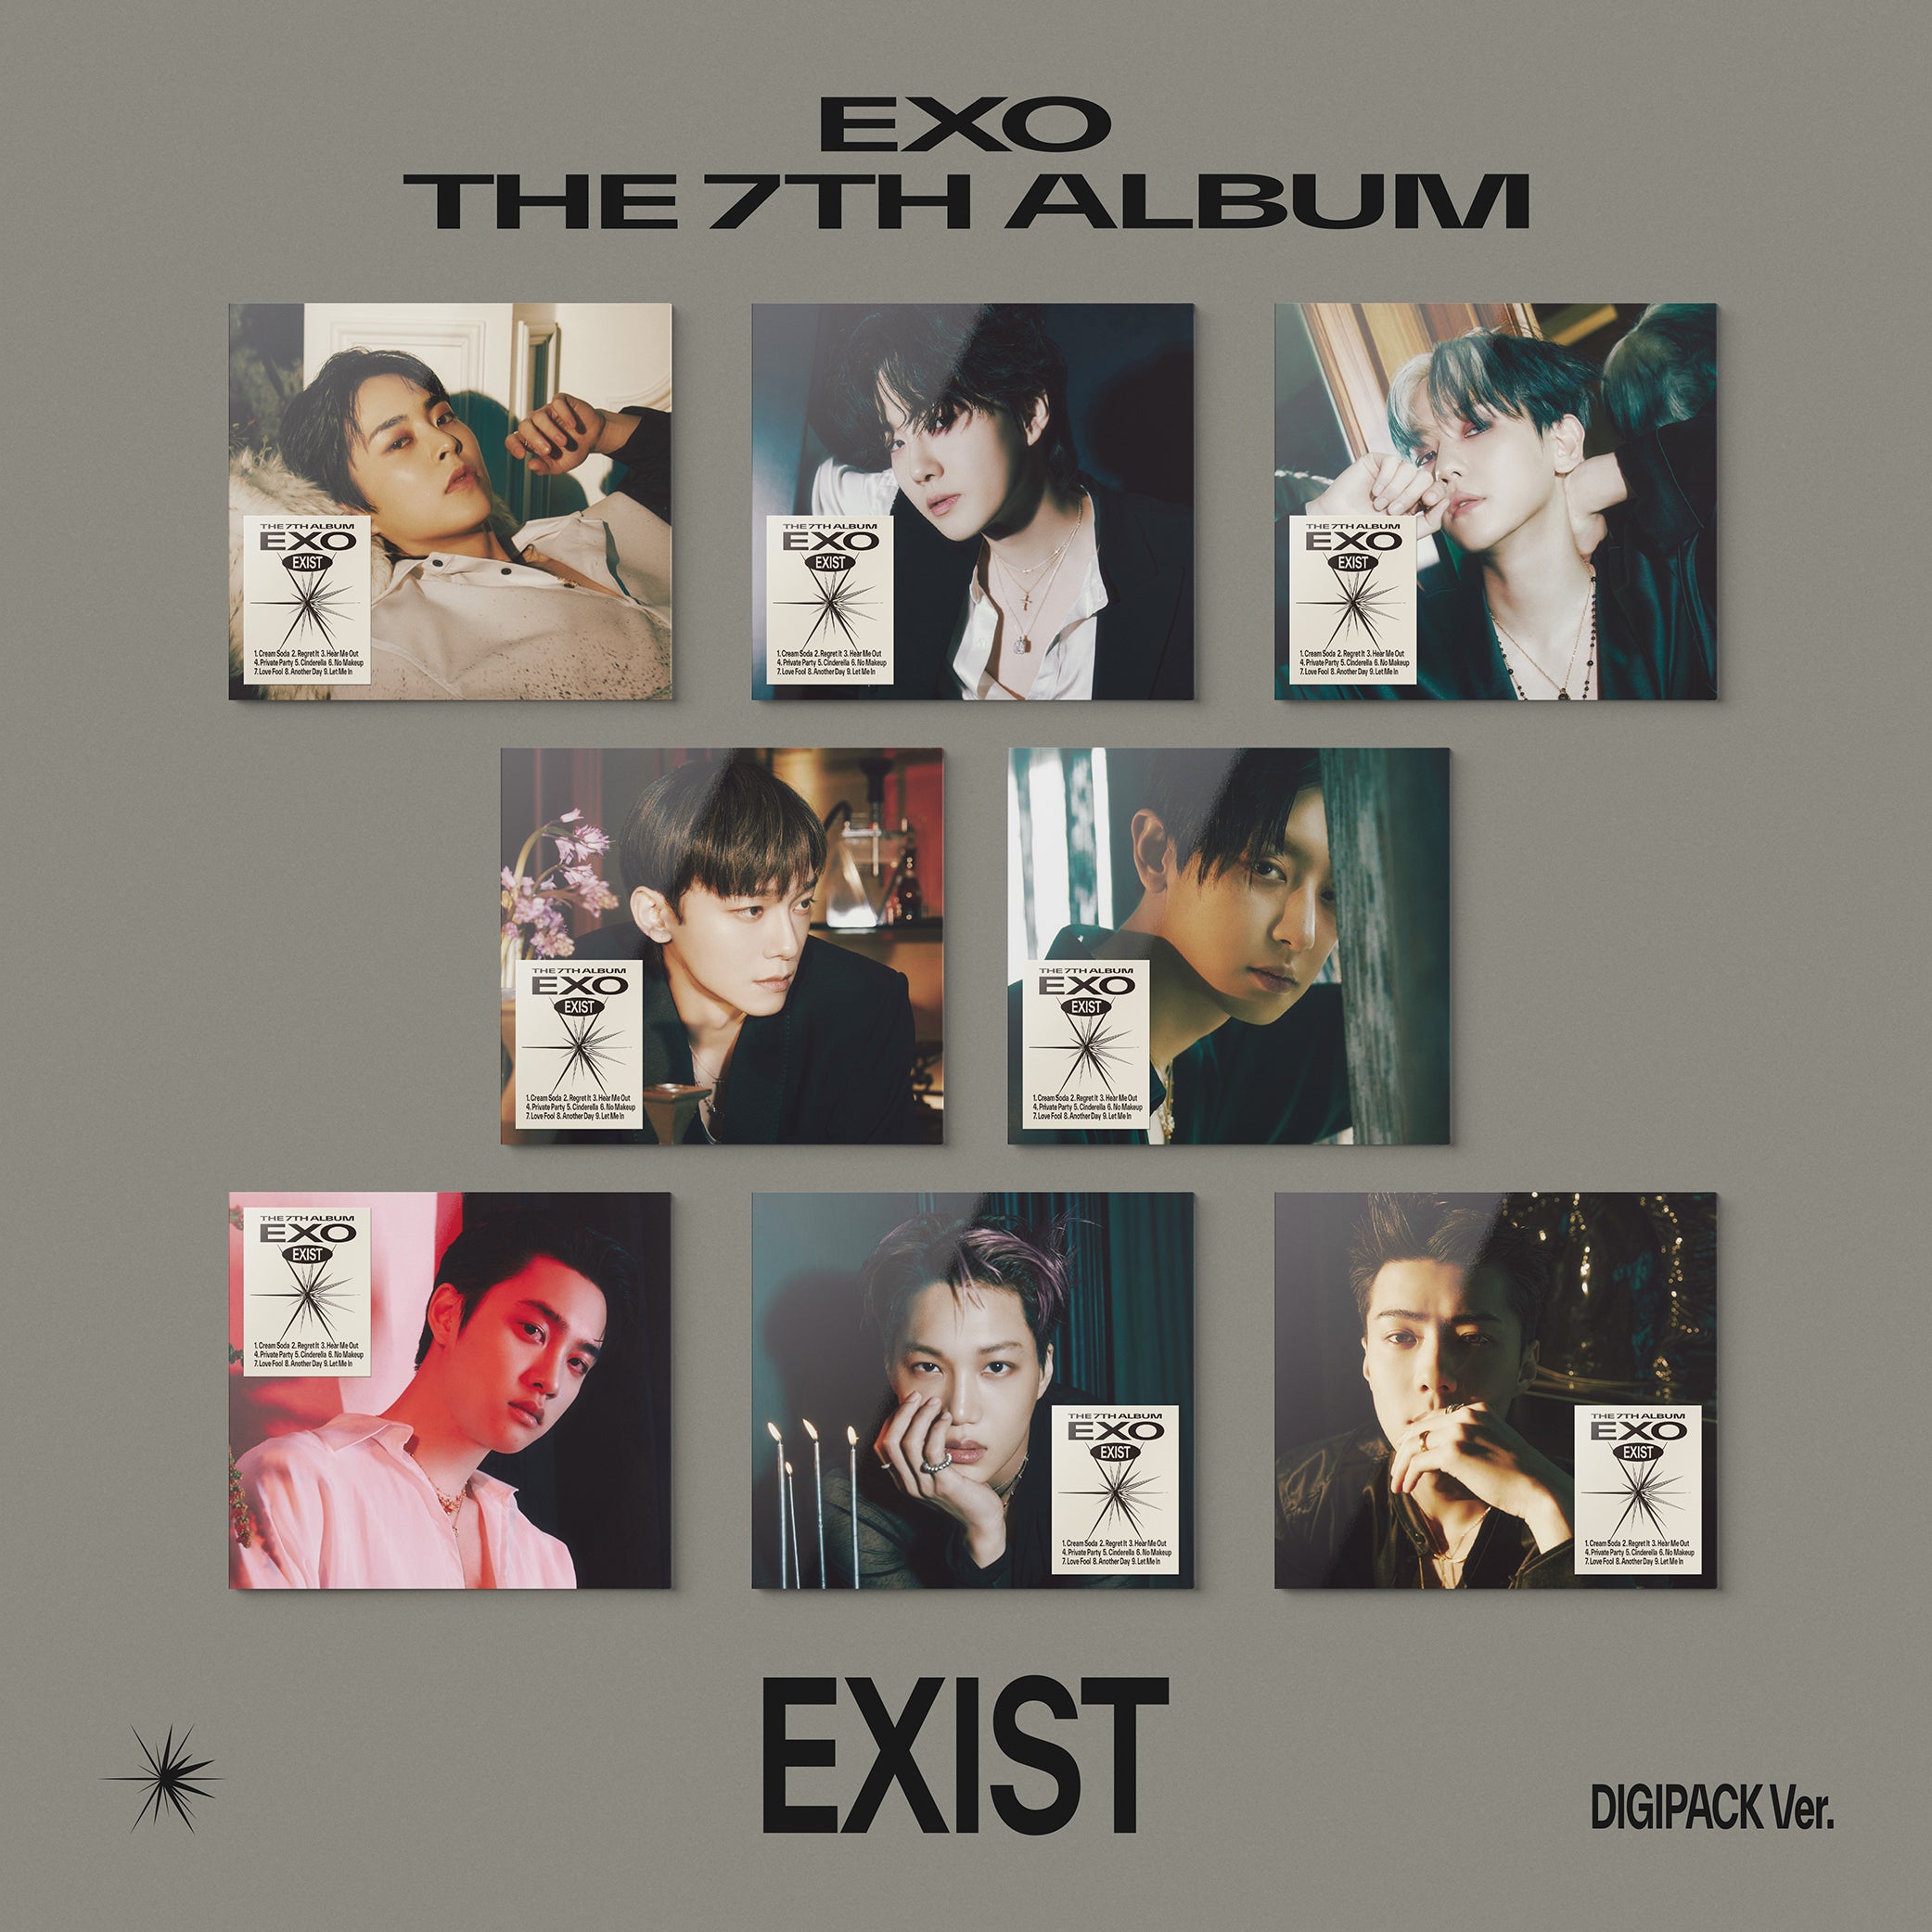 The 7th Album 'EXIST' (Digipack Ver.) - Random